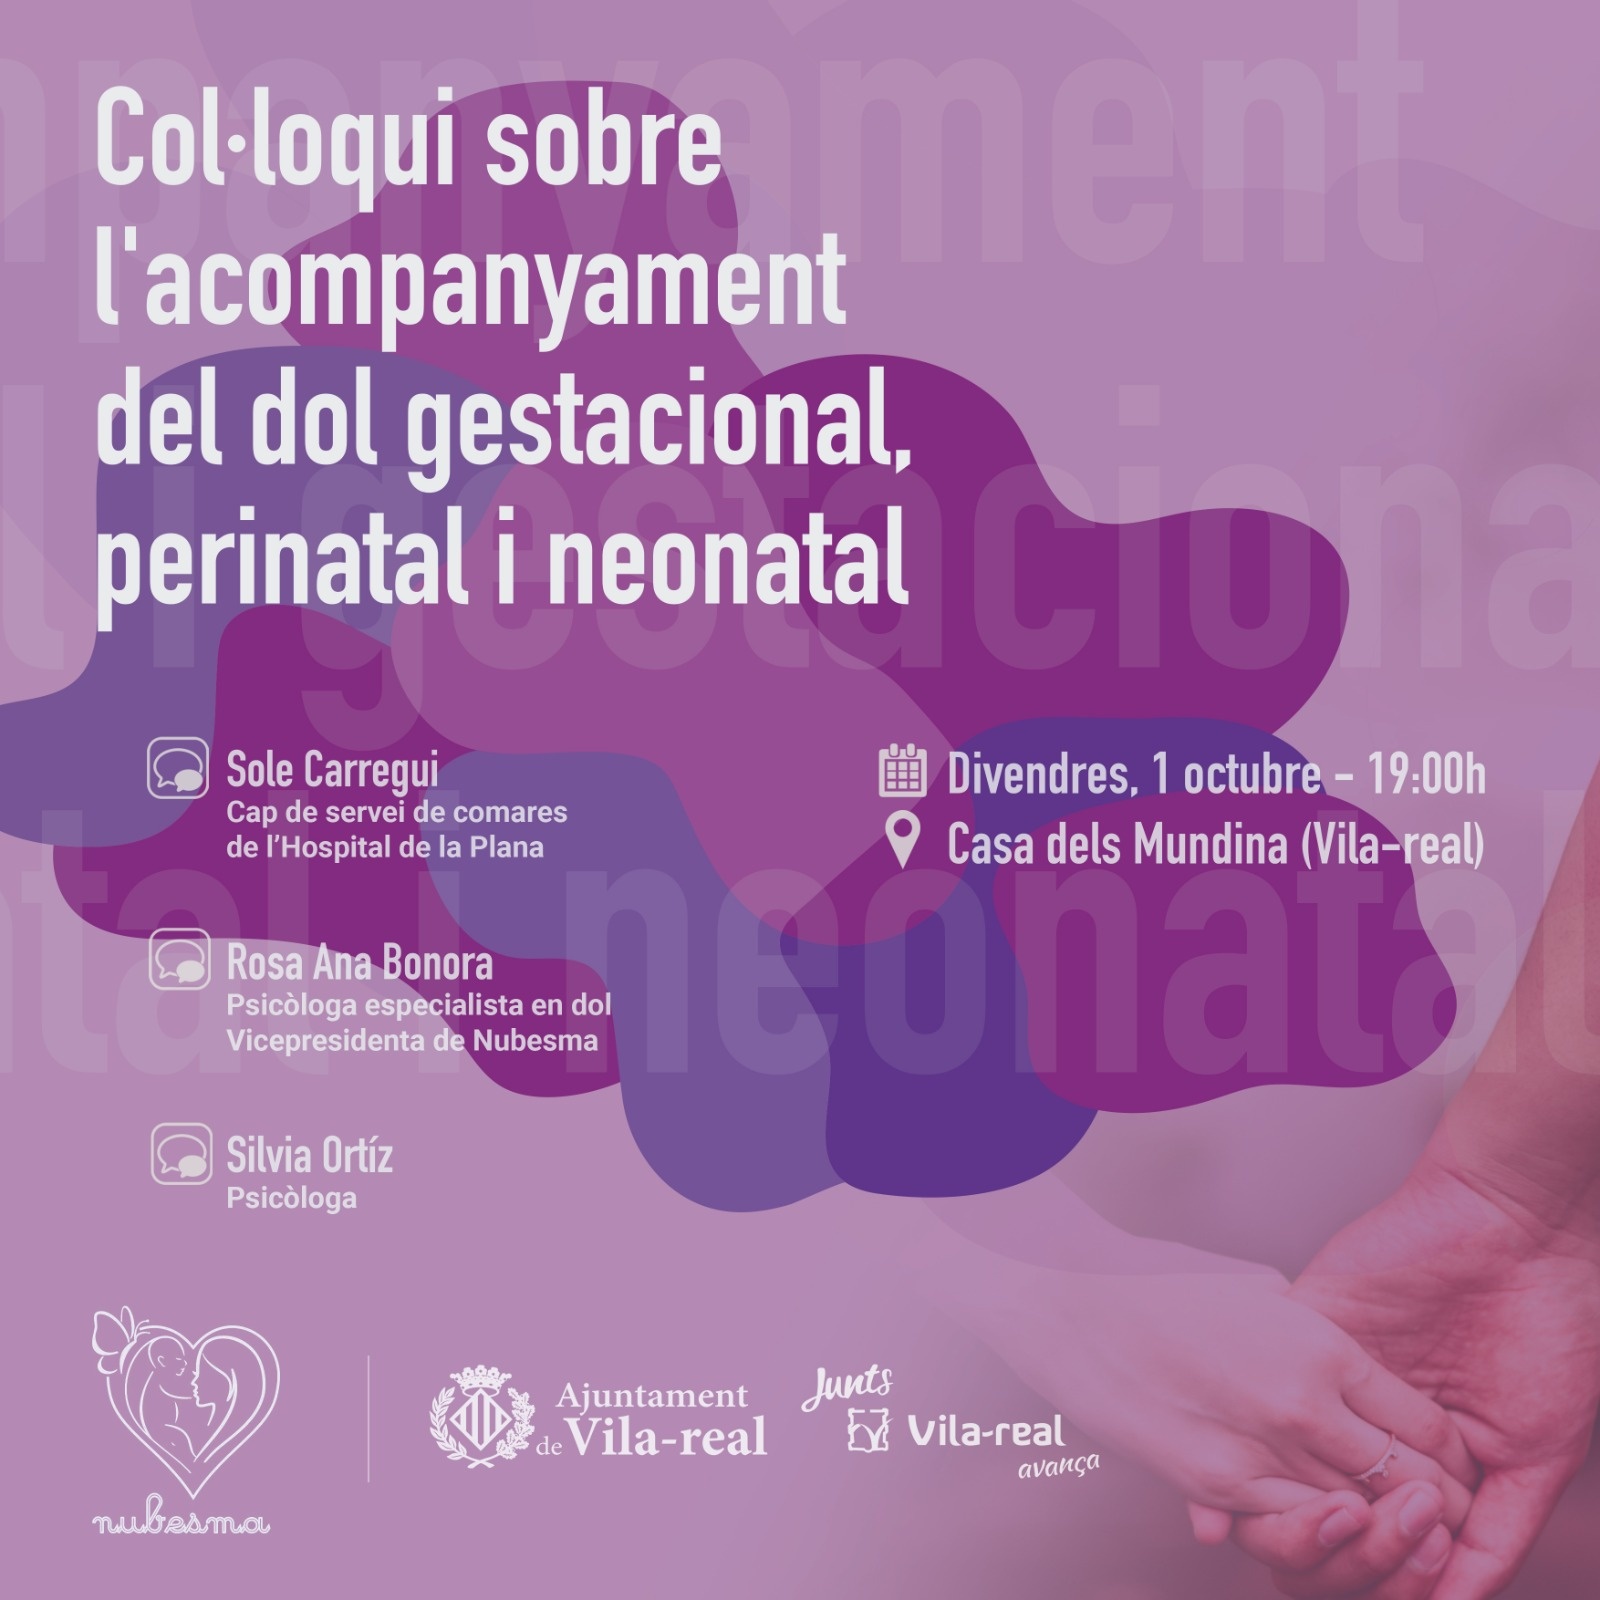 Vila-real aborda el duelo gestacional, perinatal y neonatal en una charla coloquio de la mano de Nubesma